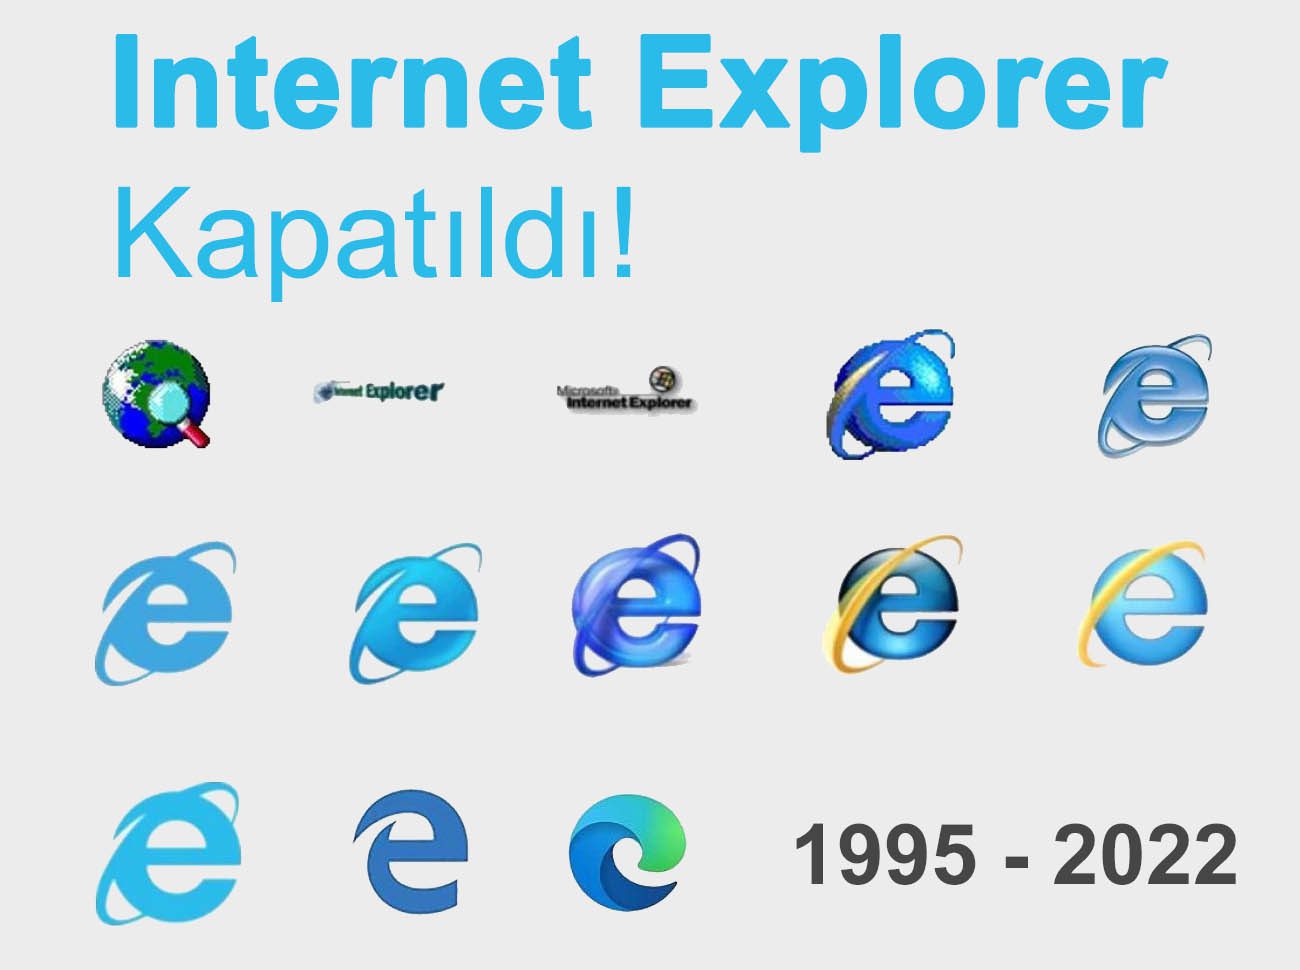 Internet Explorer Kapatıldı